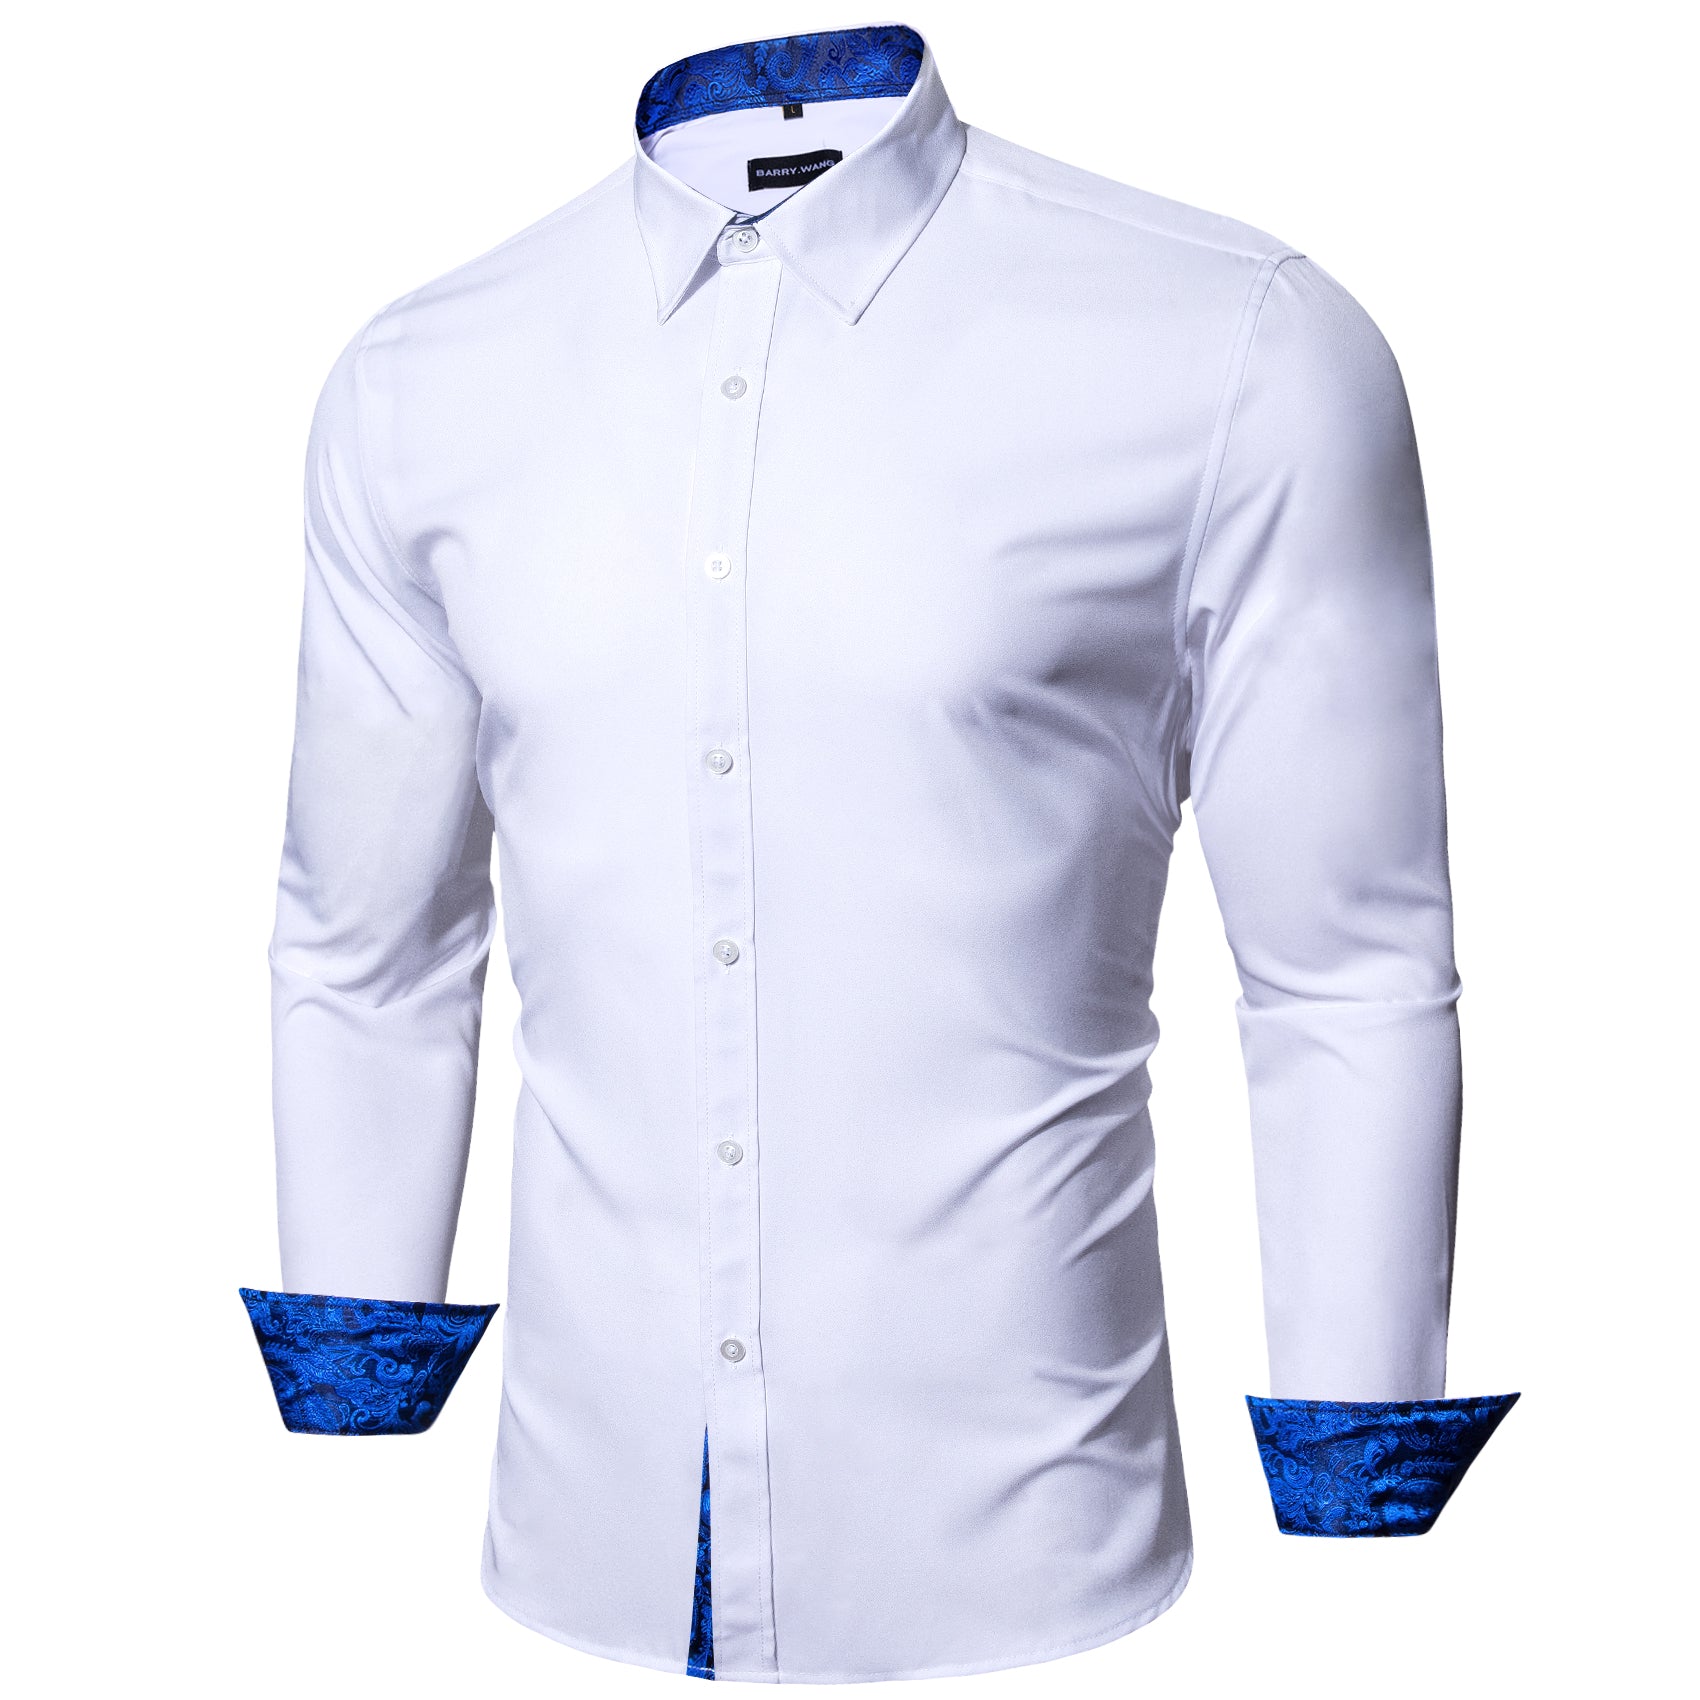 Barry.wang Button Down Shirt White Blue Splicing Men's Shirt Formal